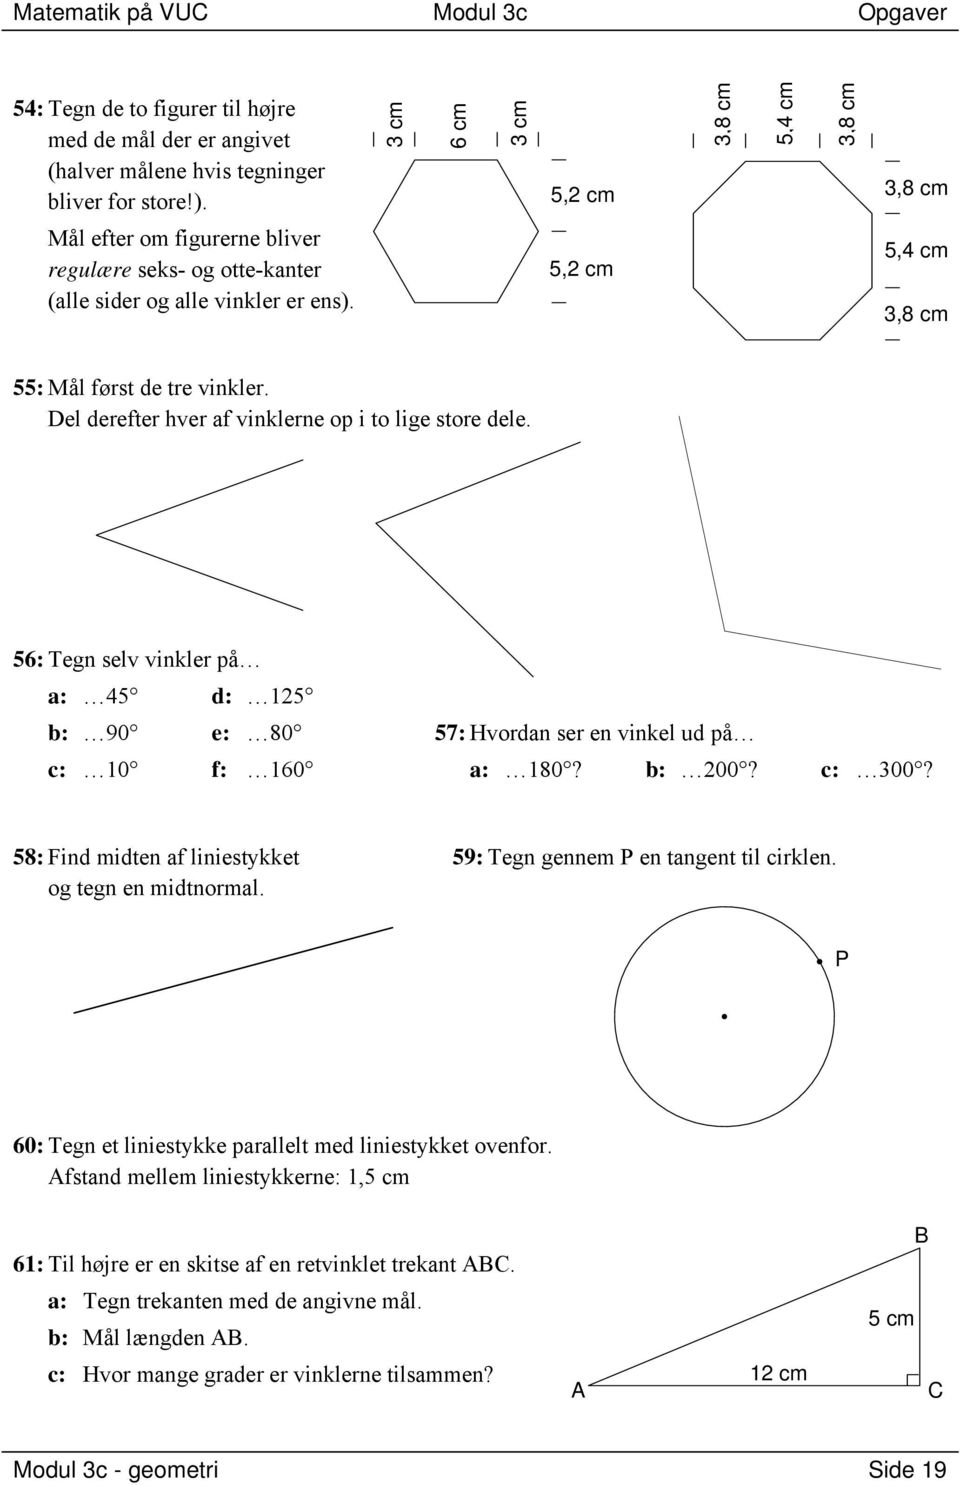 Matematik på VUC. Modul 3c geometri. Indholdsfortegnelse - PDF Free Download